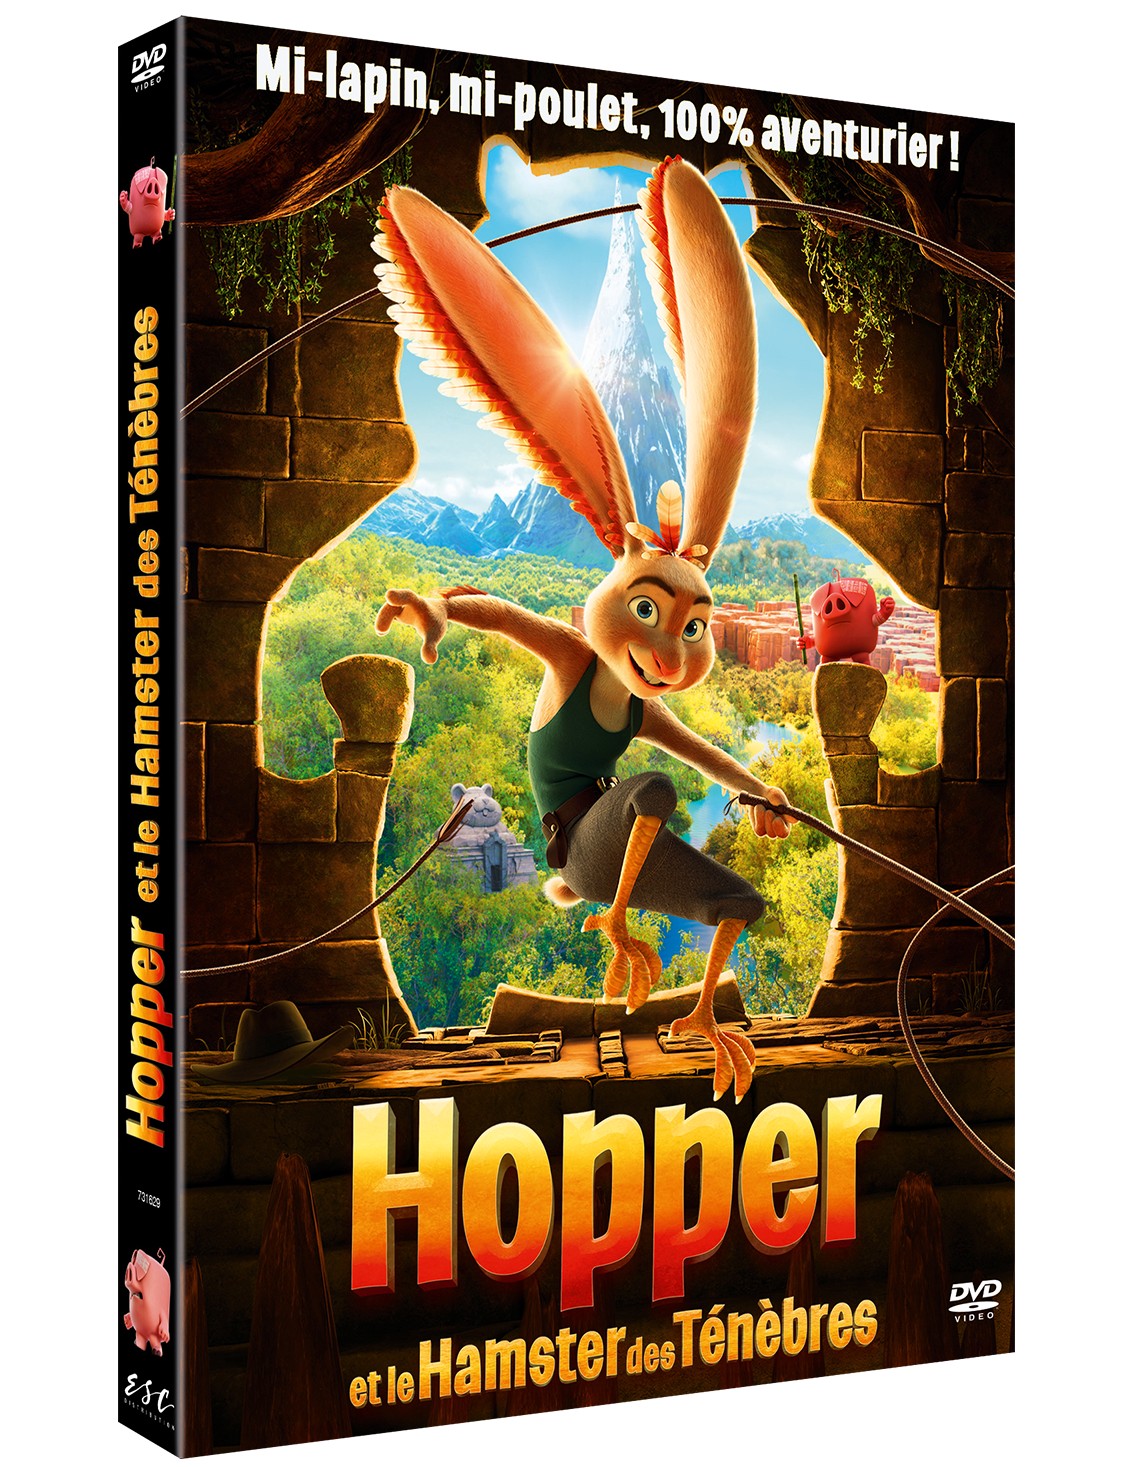 HOPPER ET LE HAMSTER DES TENEBRES - DVD